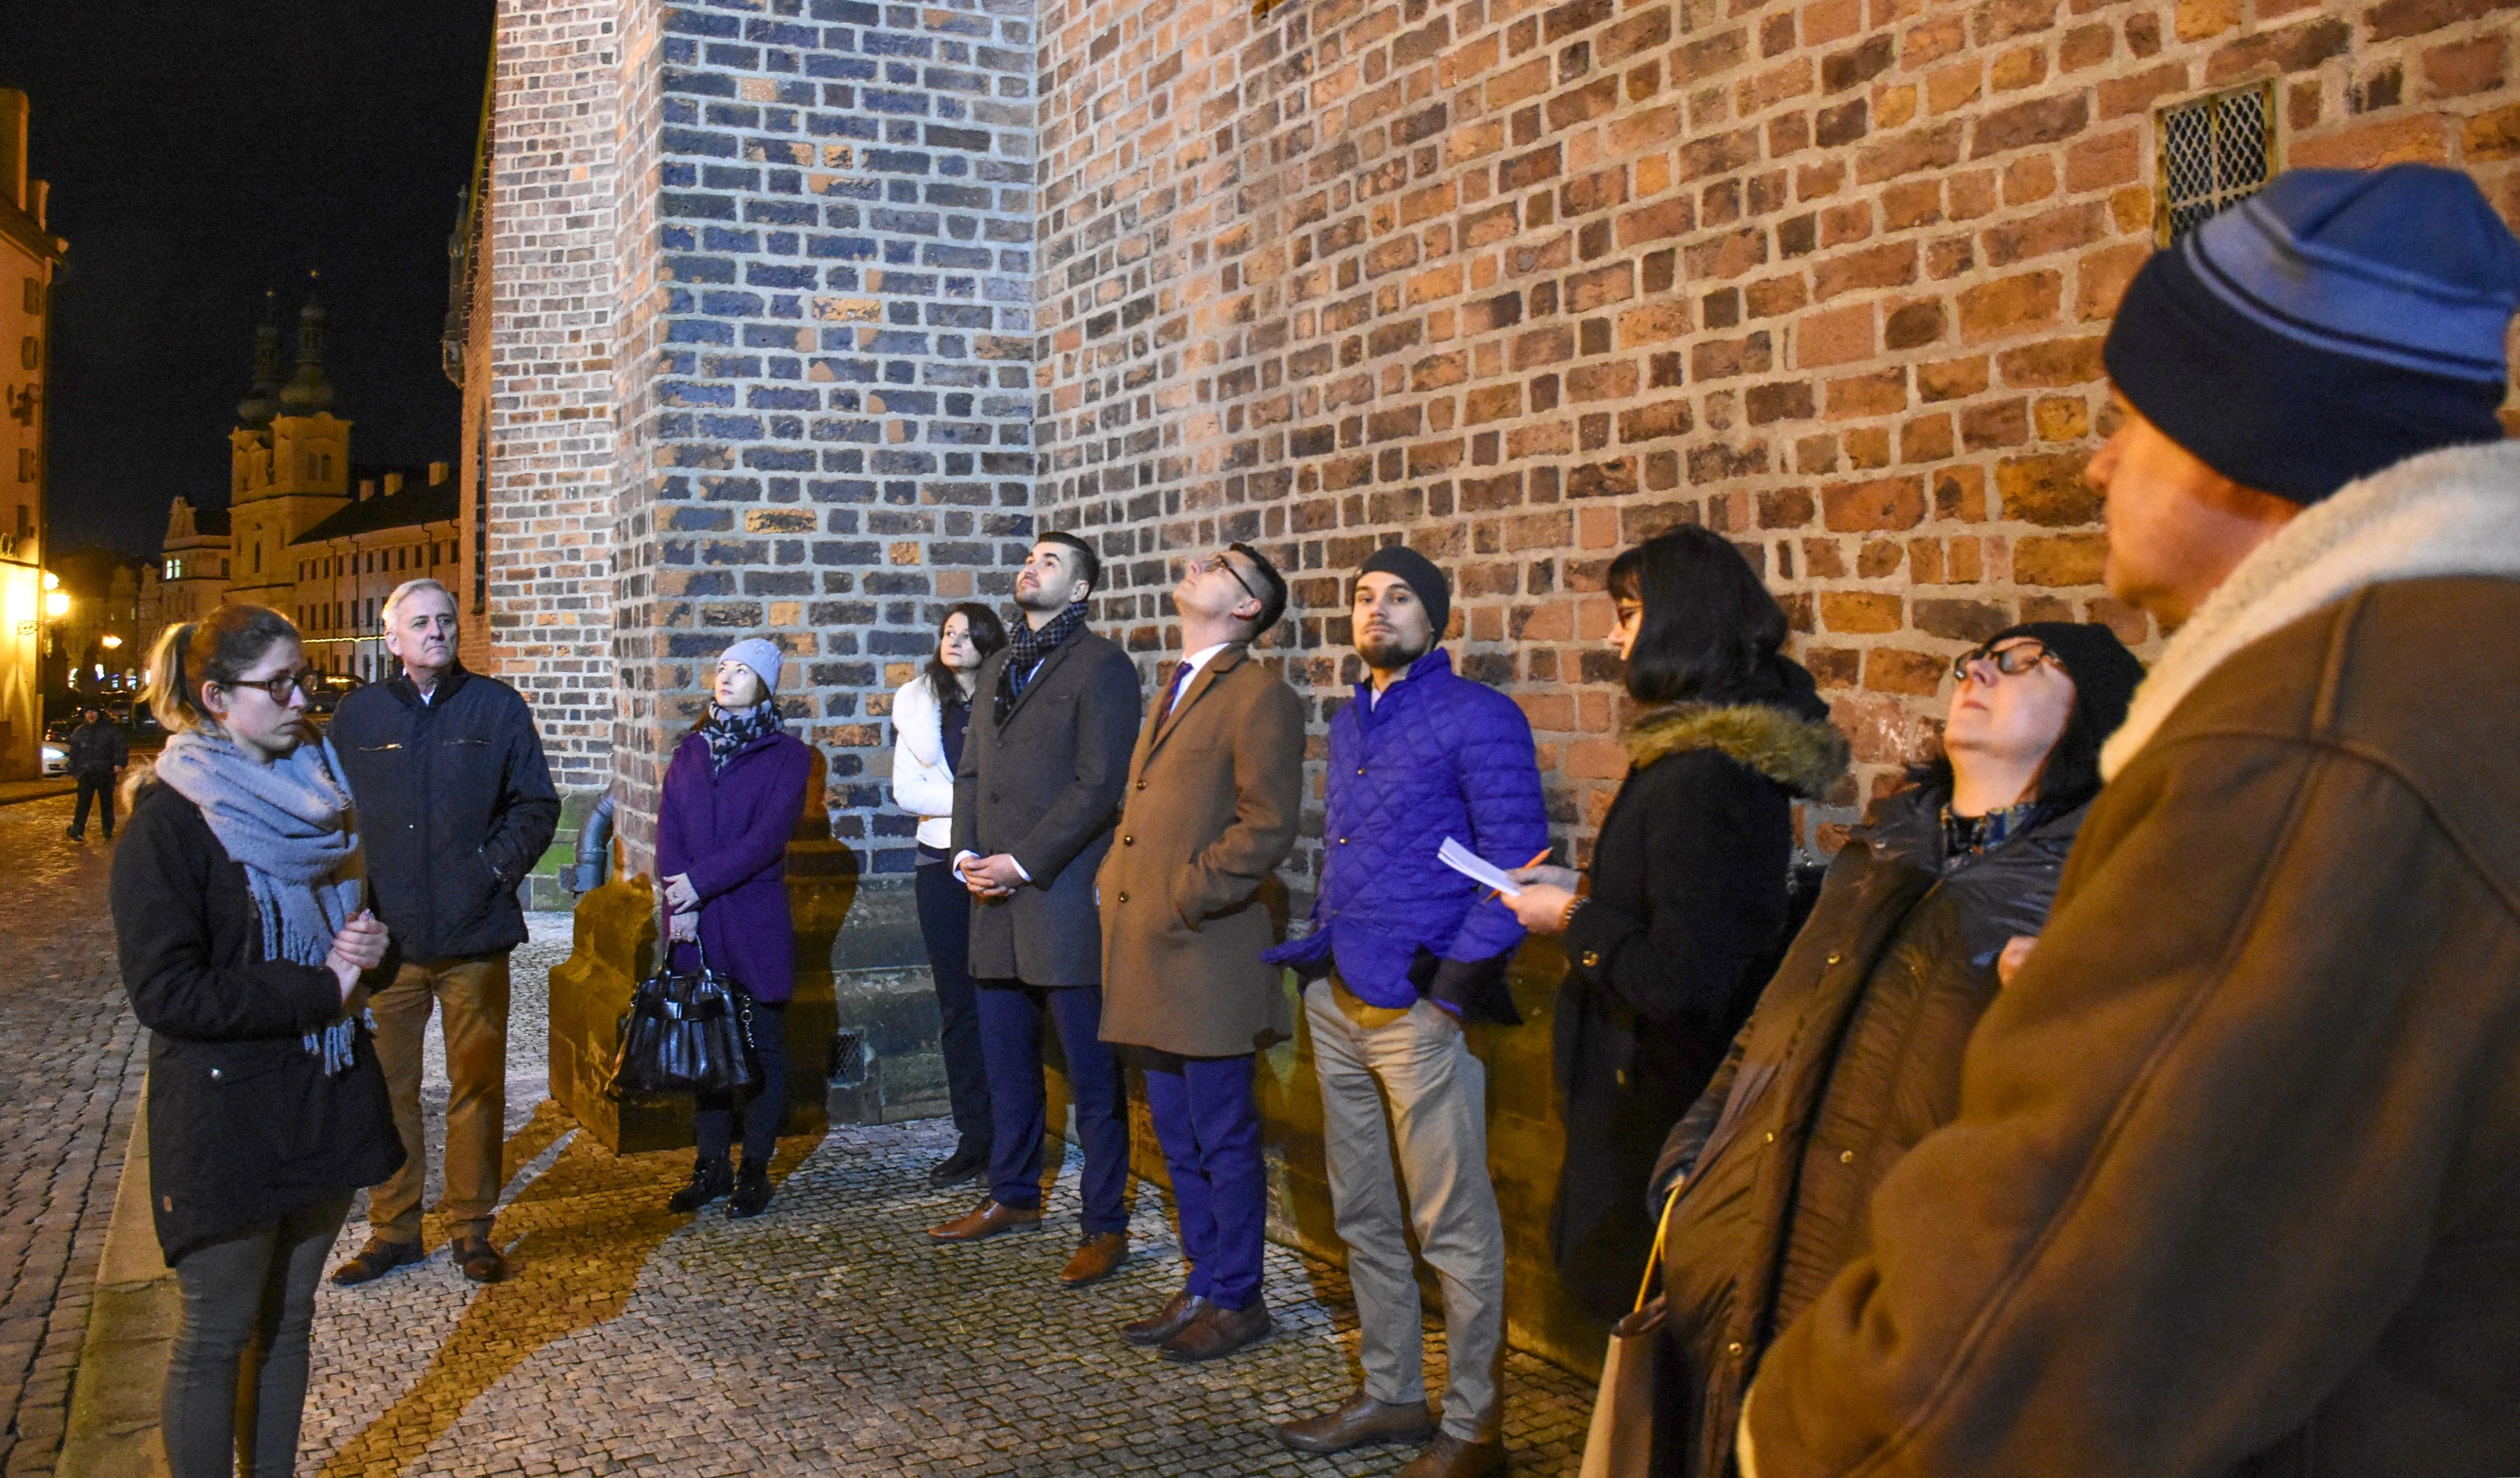 Partneři z Dolnoslezského vojvodství navštívili hradeckou výrobnu ultralightů a debatovali o pořádání Rock for People